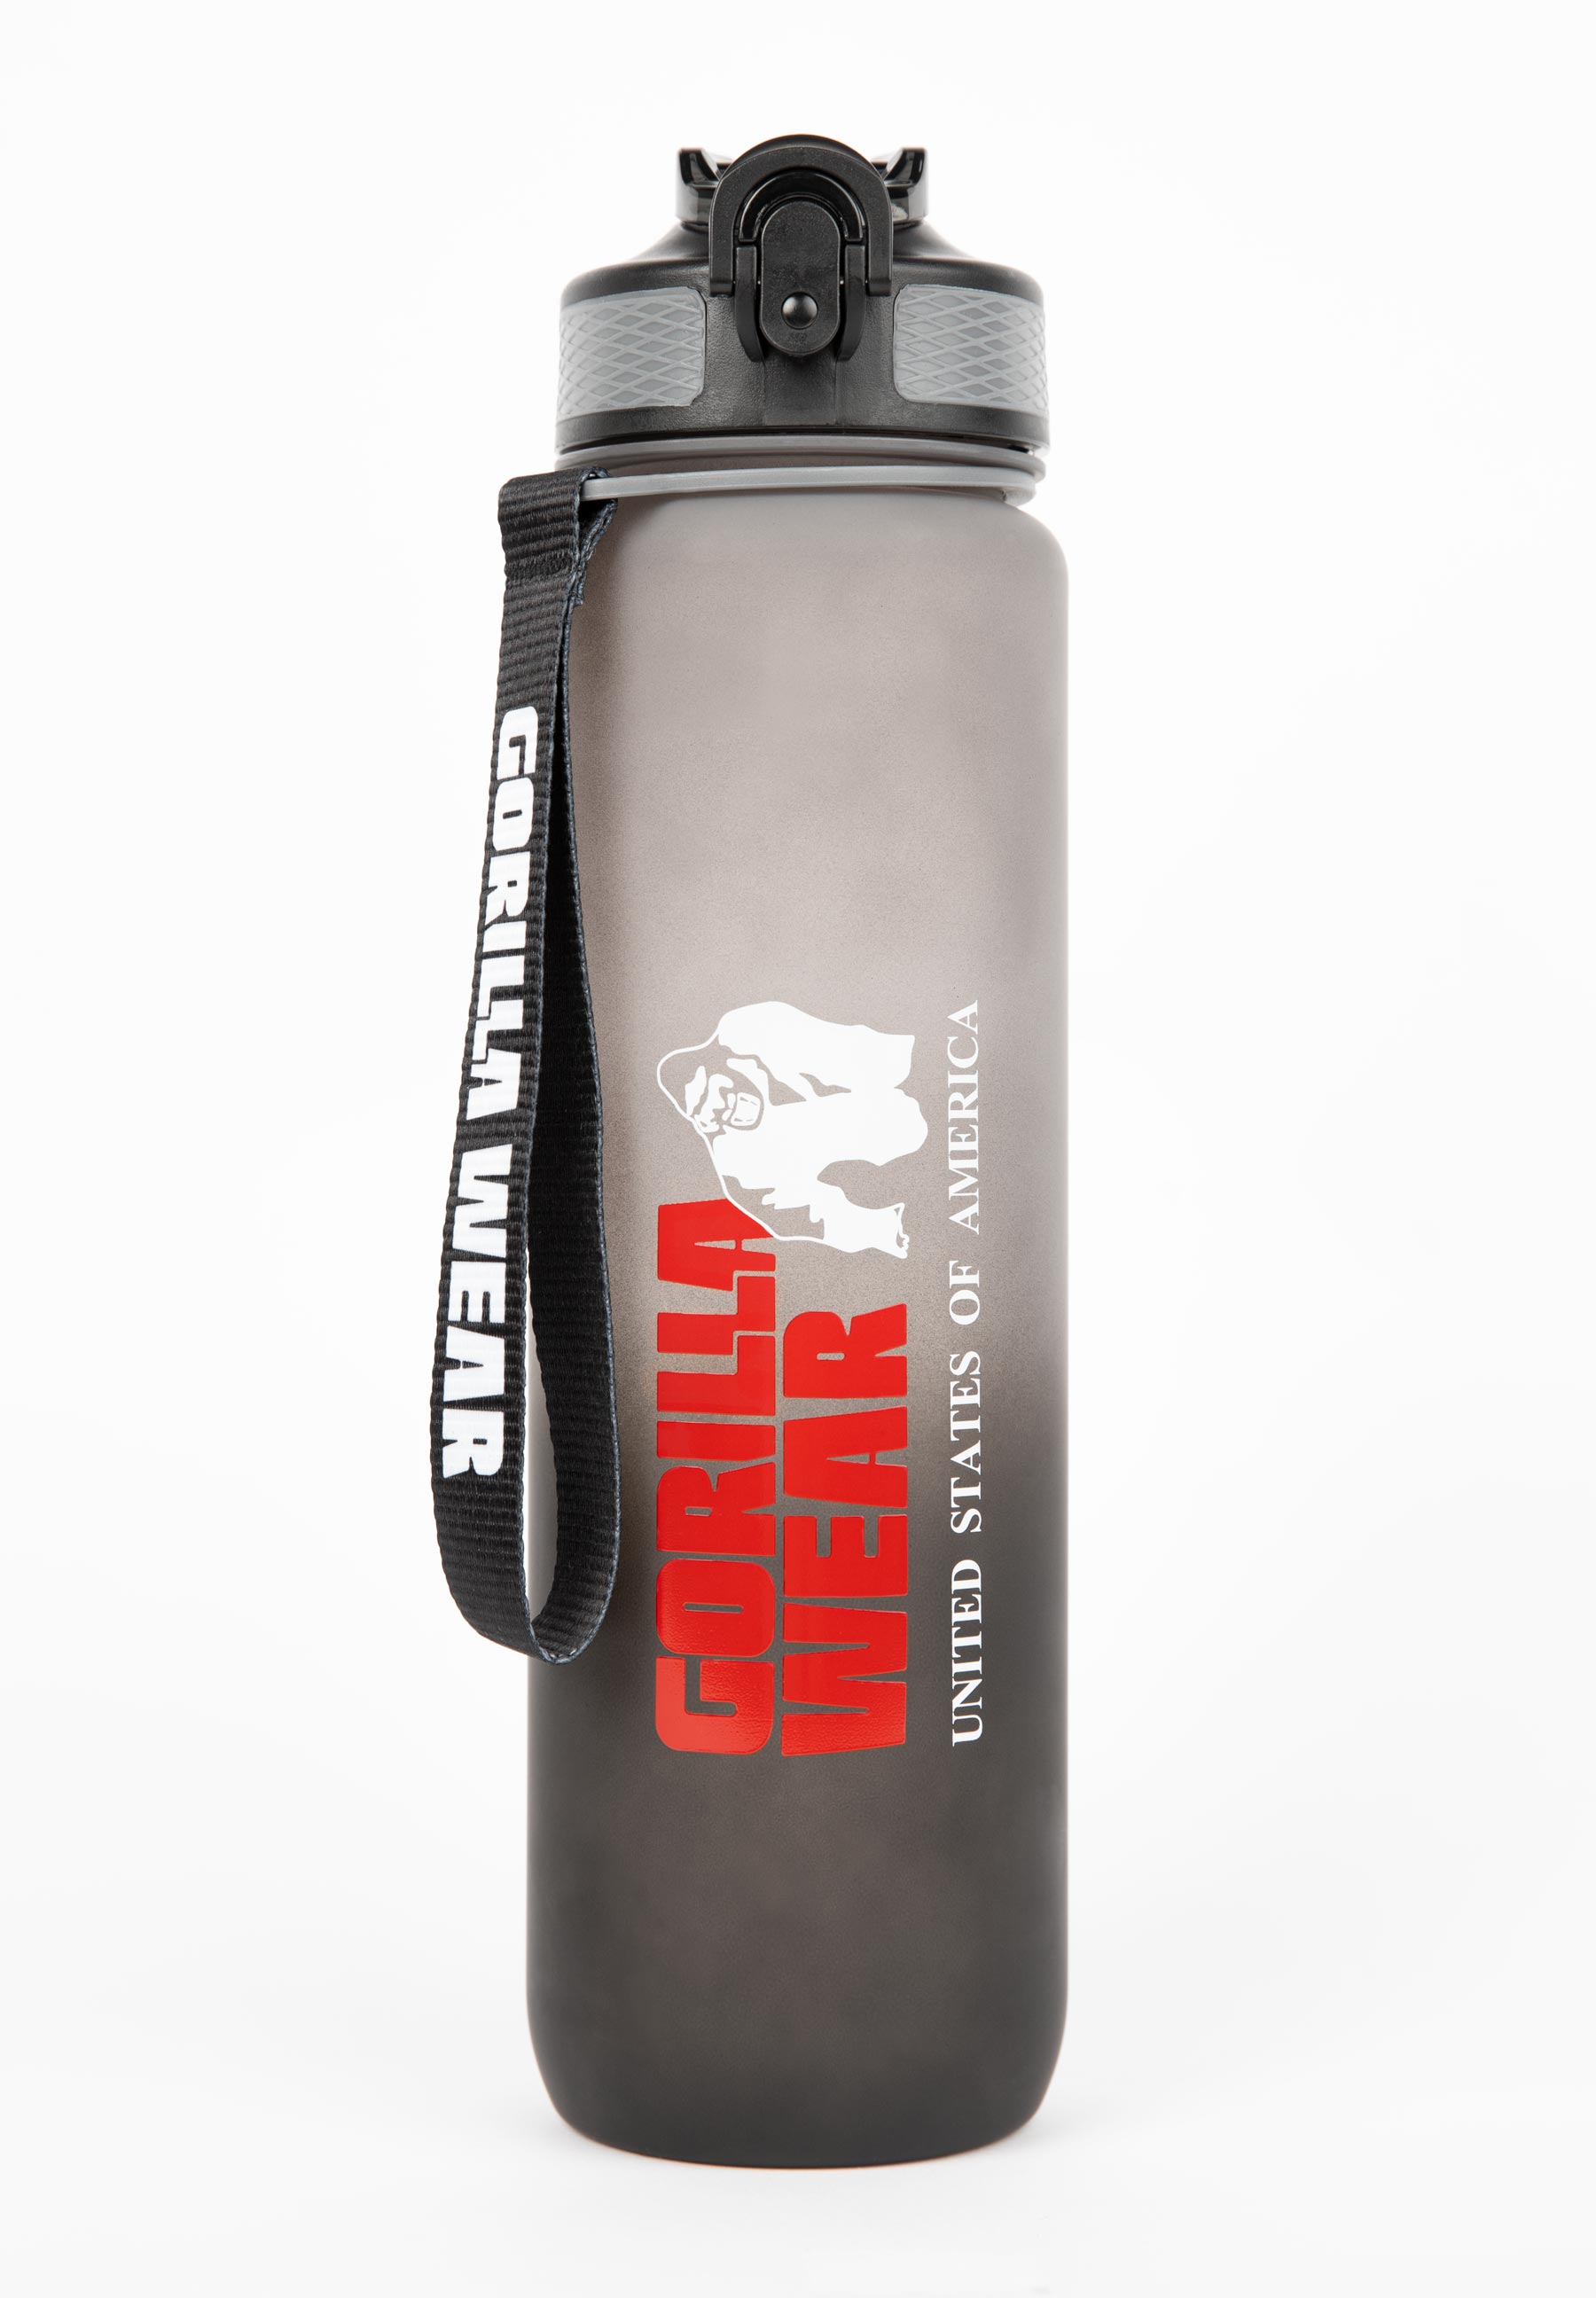 Gorilla Shaker Bottle – Primal Strength & Balance